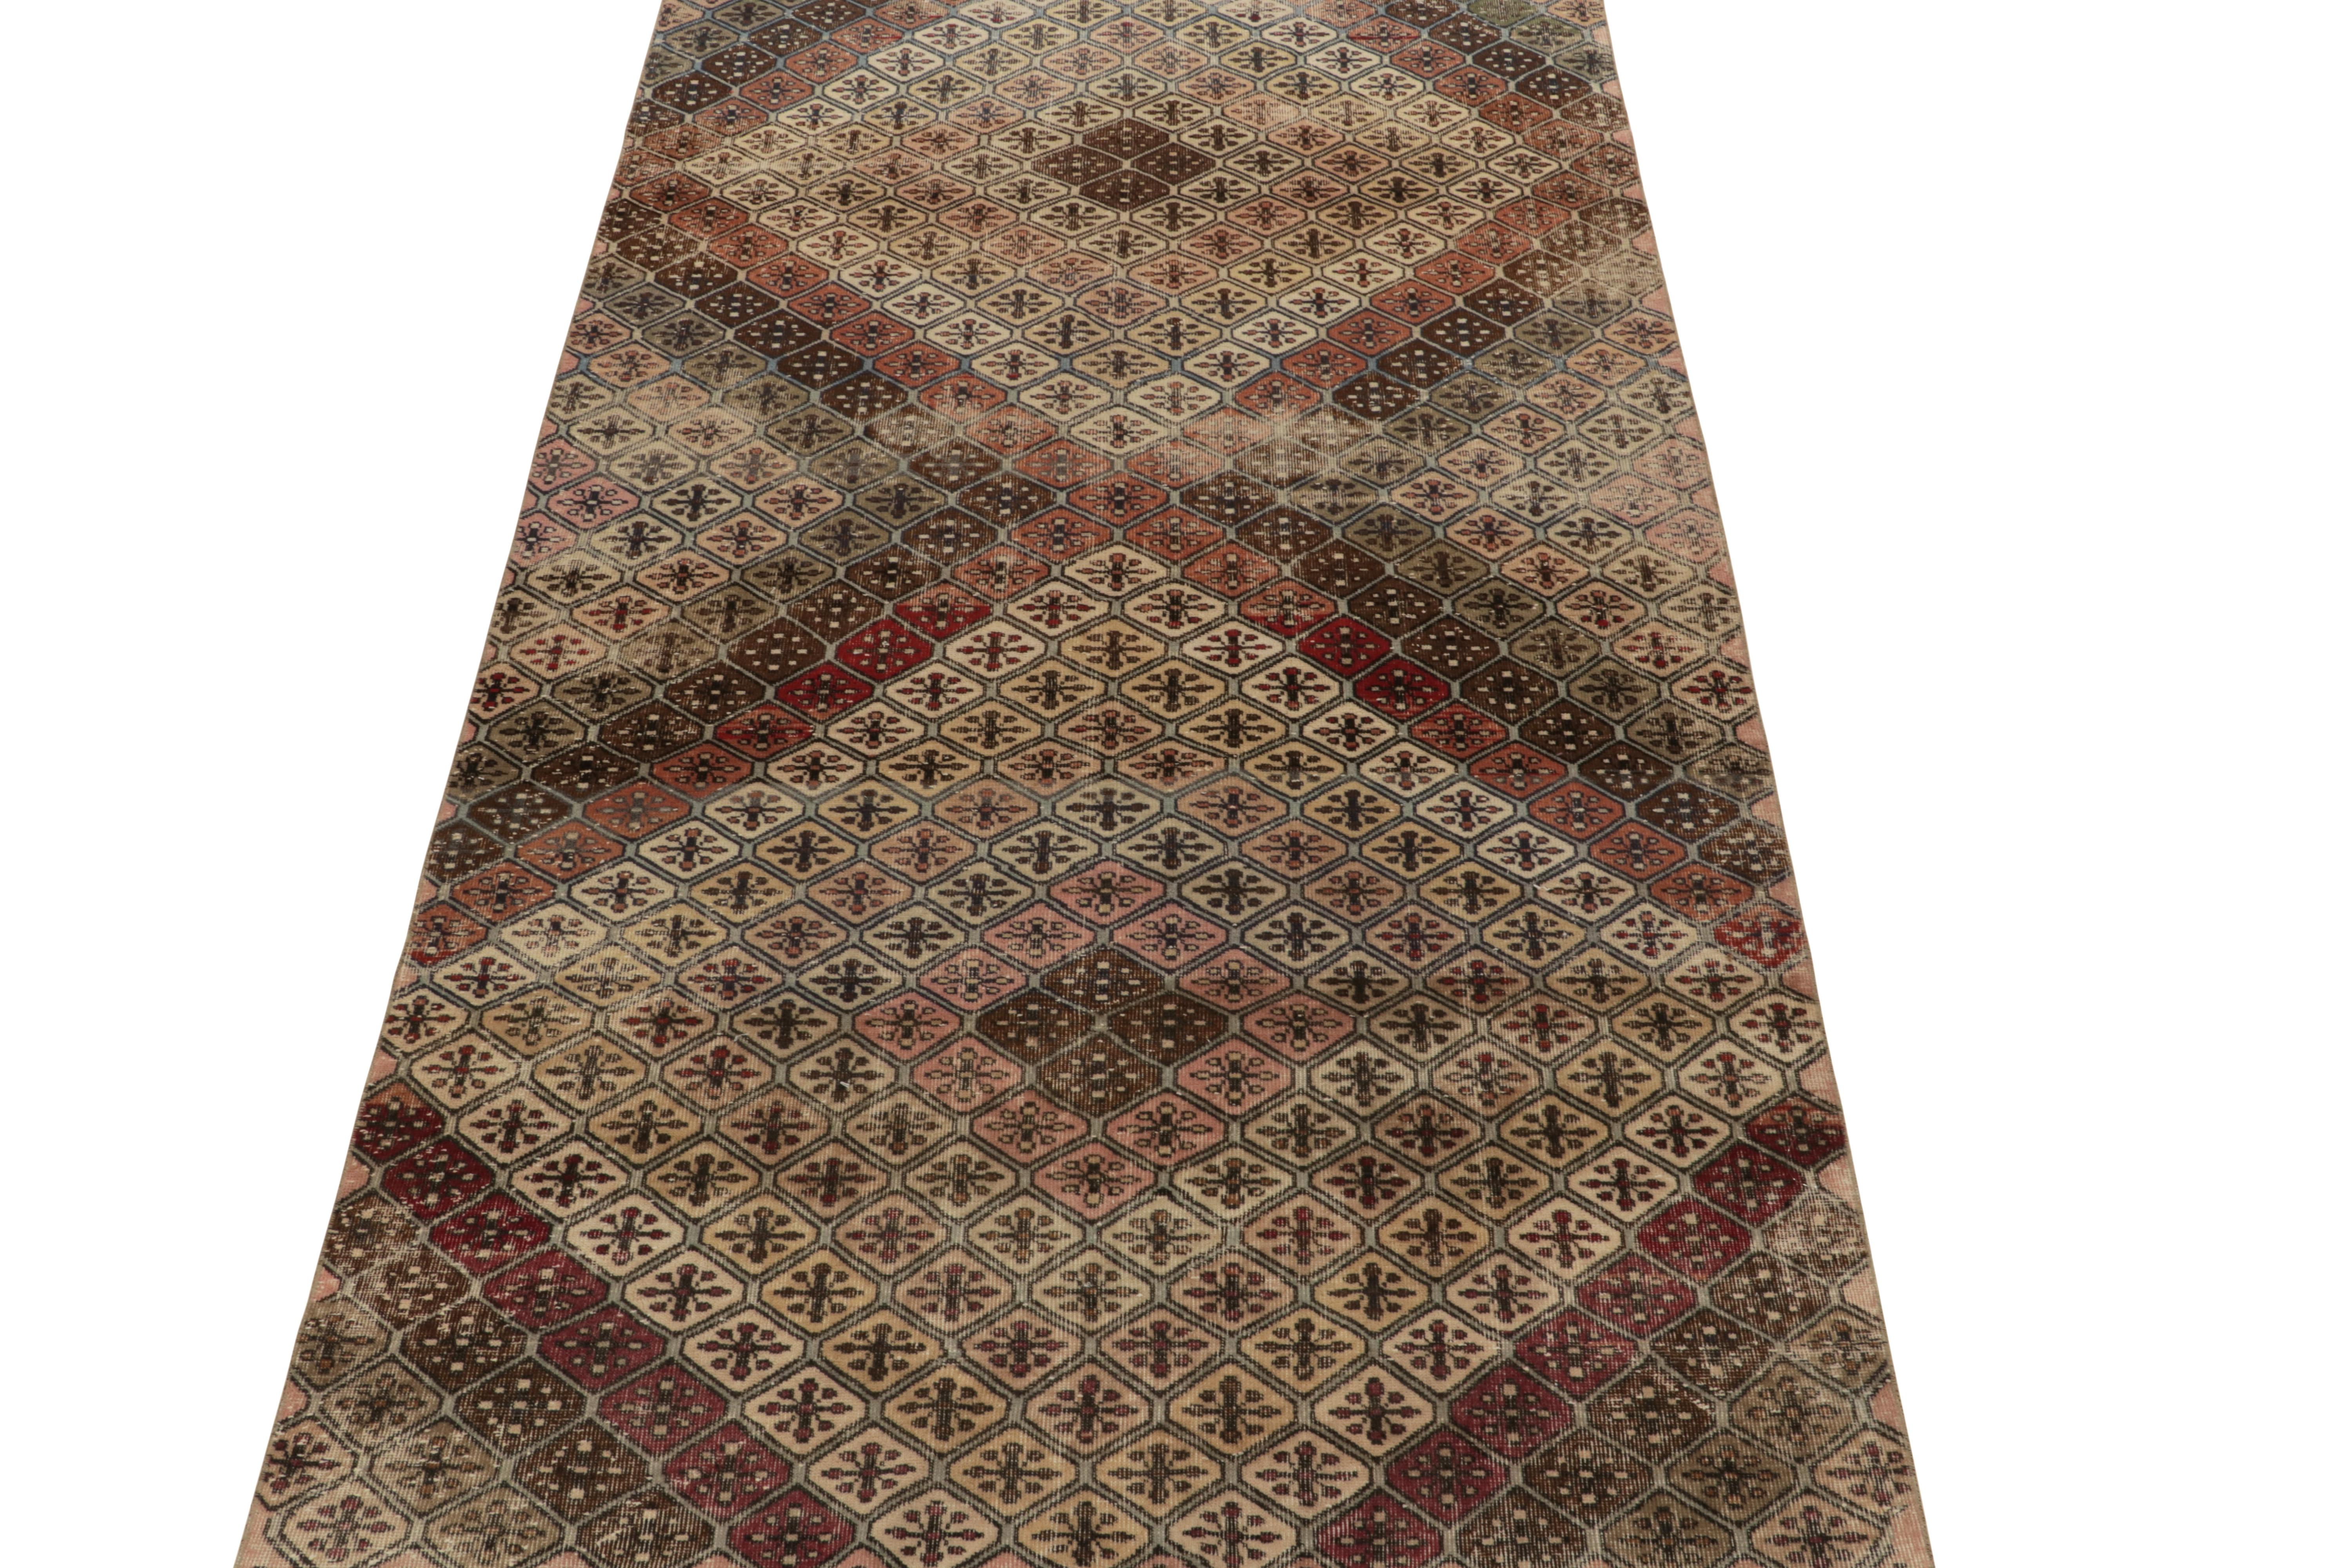 Ein 6x11 Vintage-Teppich aus dem Werk eines kühnen, multidisziplinären türkischen Designers, der zu den neuesten Mitgliedern der Pasha-Kollektion von Rug & Kilim aus der Mitte des Jahrhunderts gehört. 

Das wunderschöne Zusammenspiel von